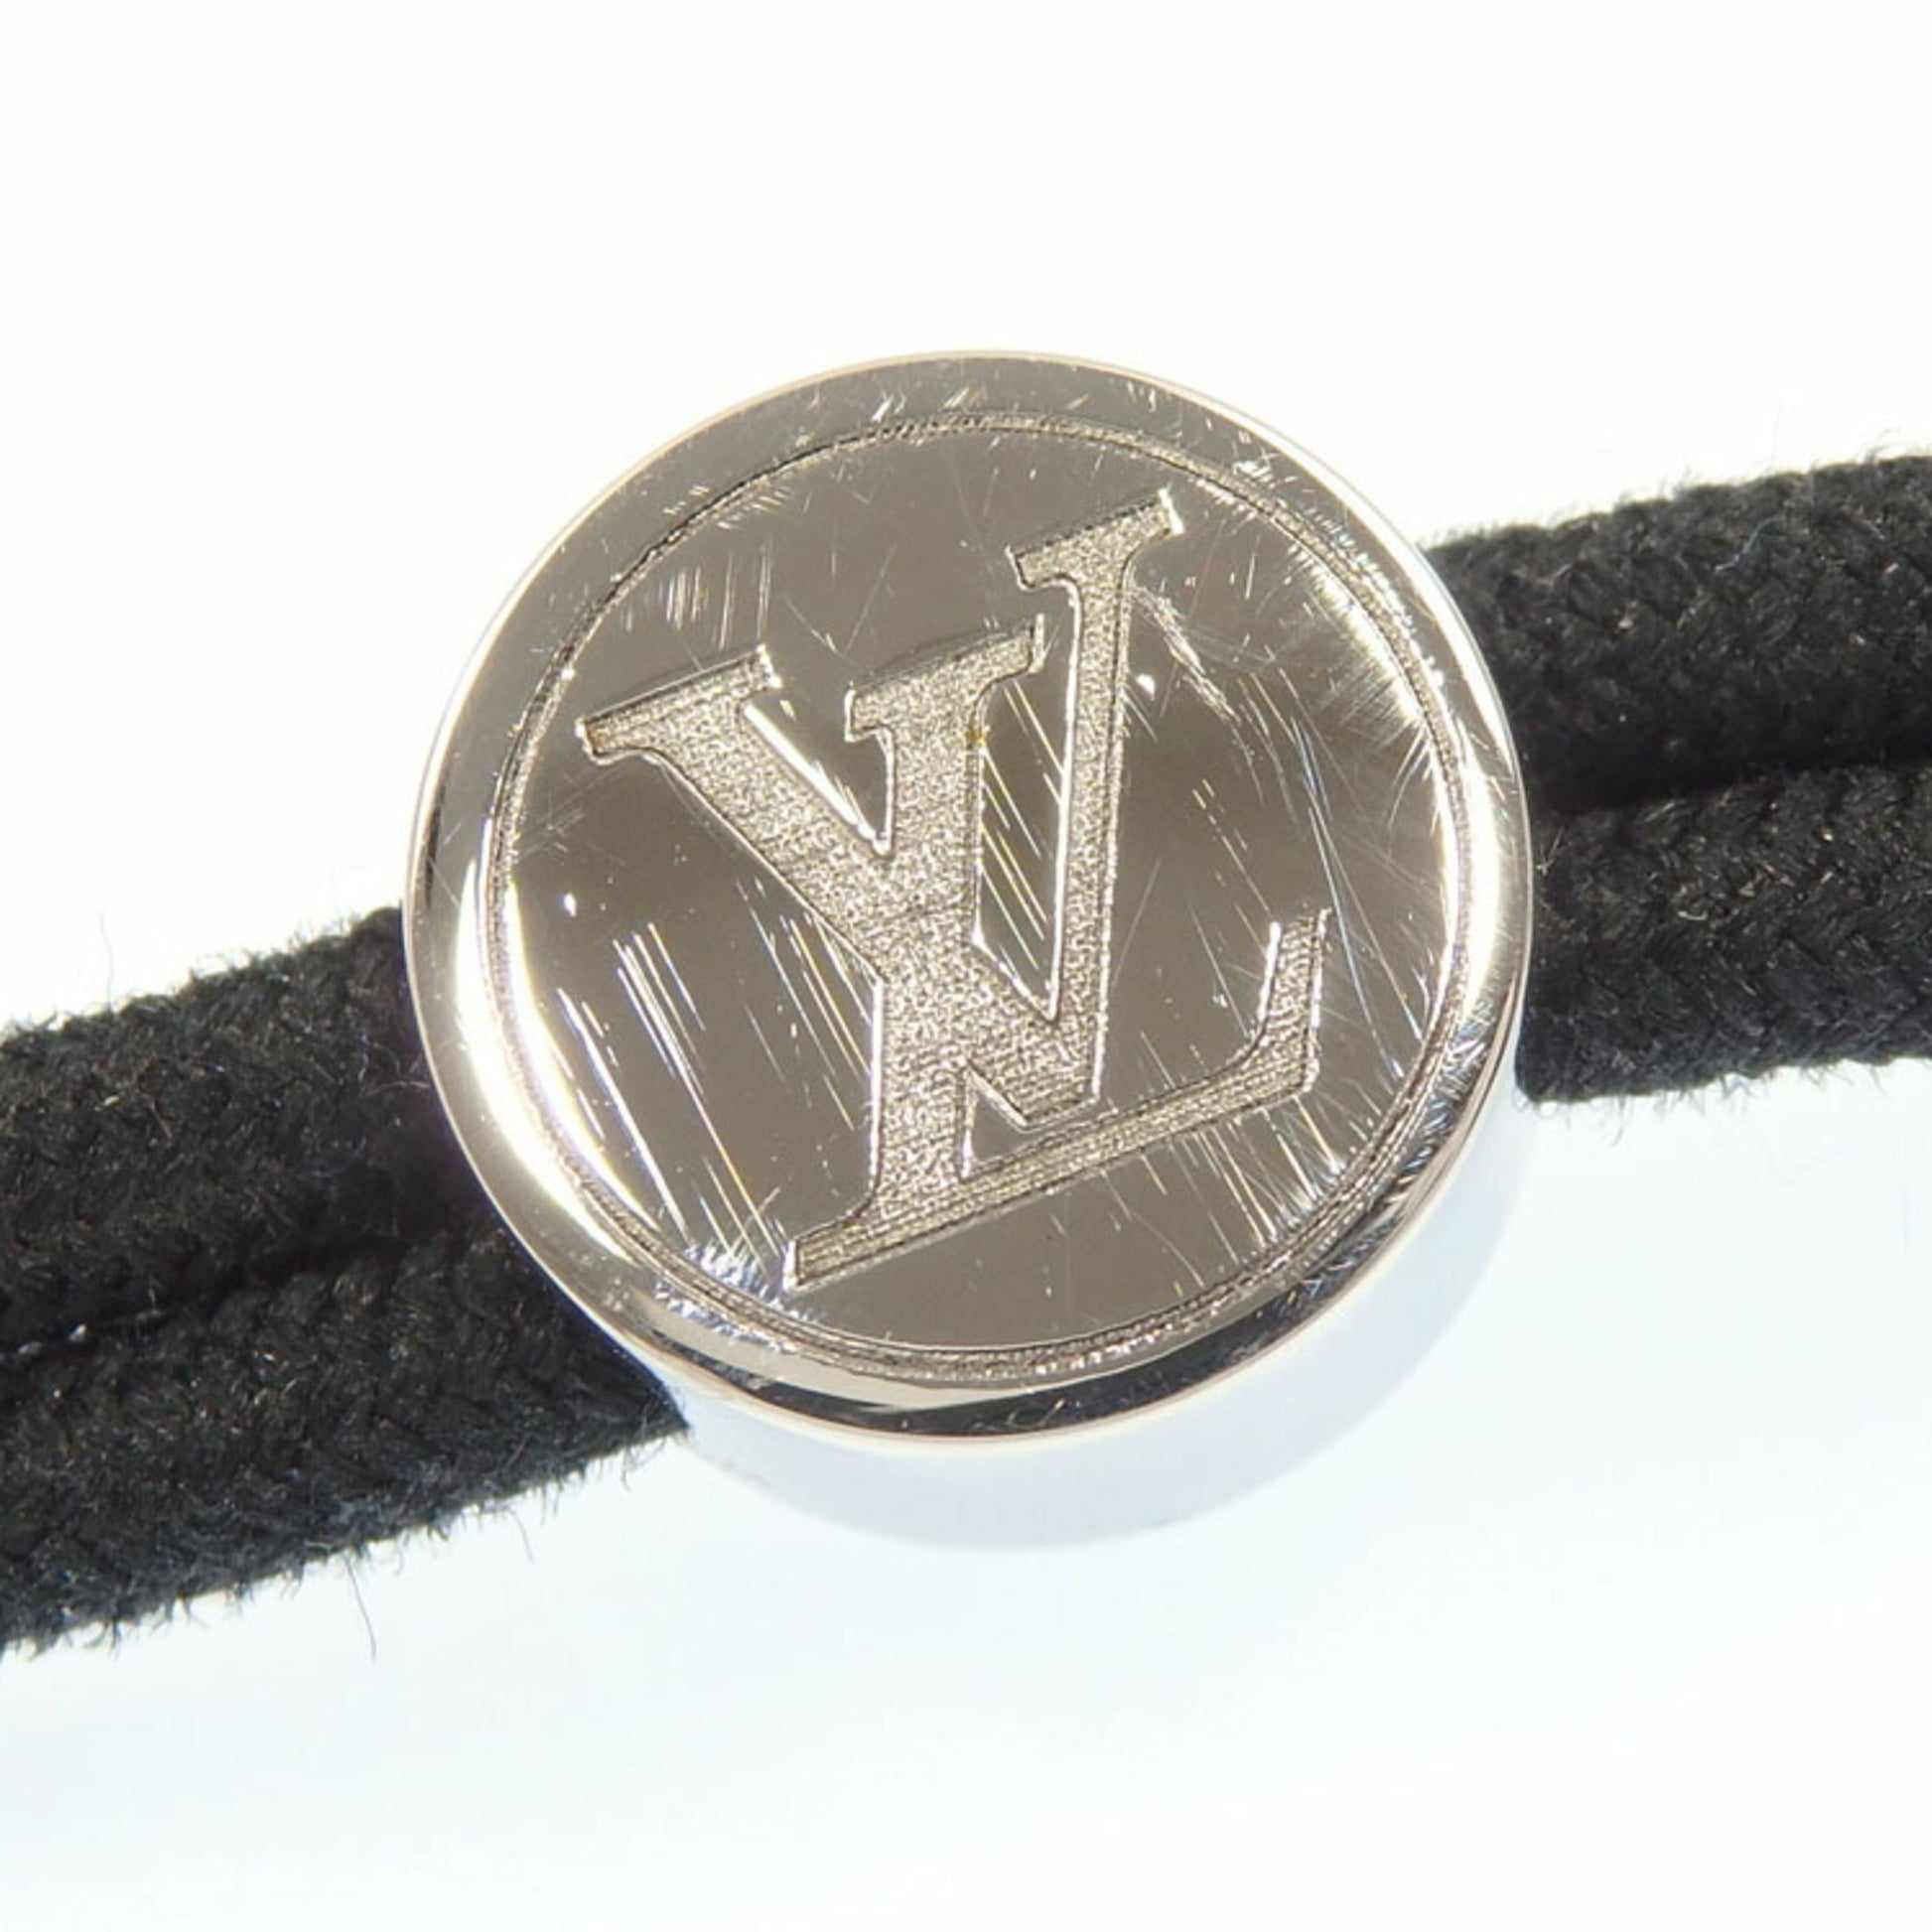 Shop Louis Vuitton Space lv bracelet (LV SPACE BRACELET, M00273, M00274) by  Mikrie